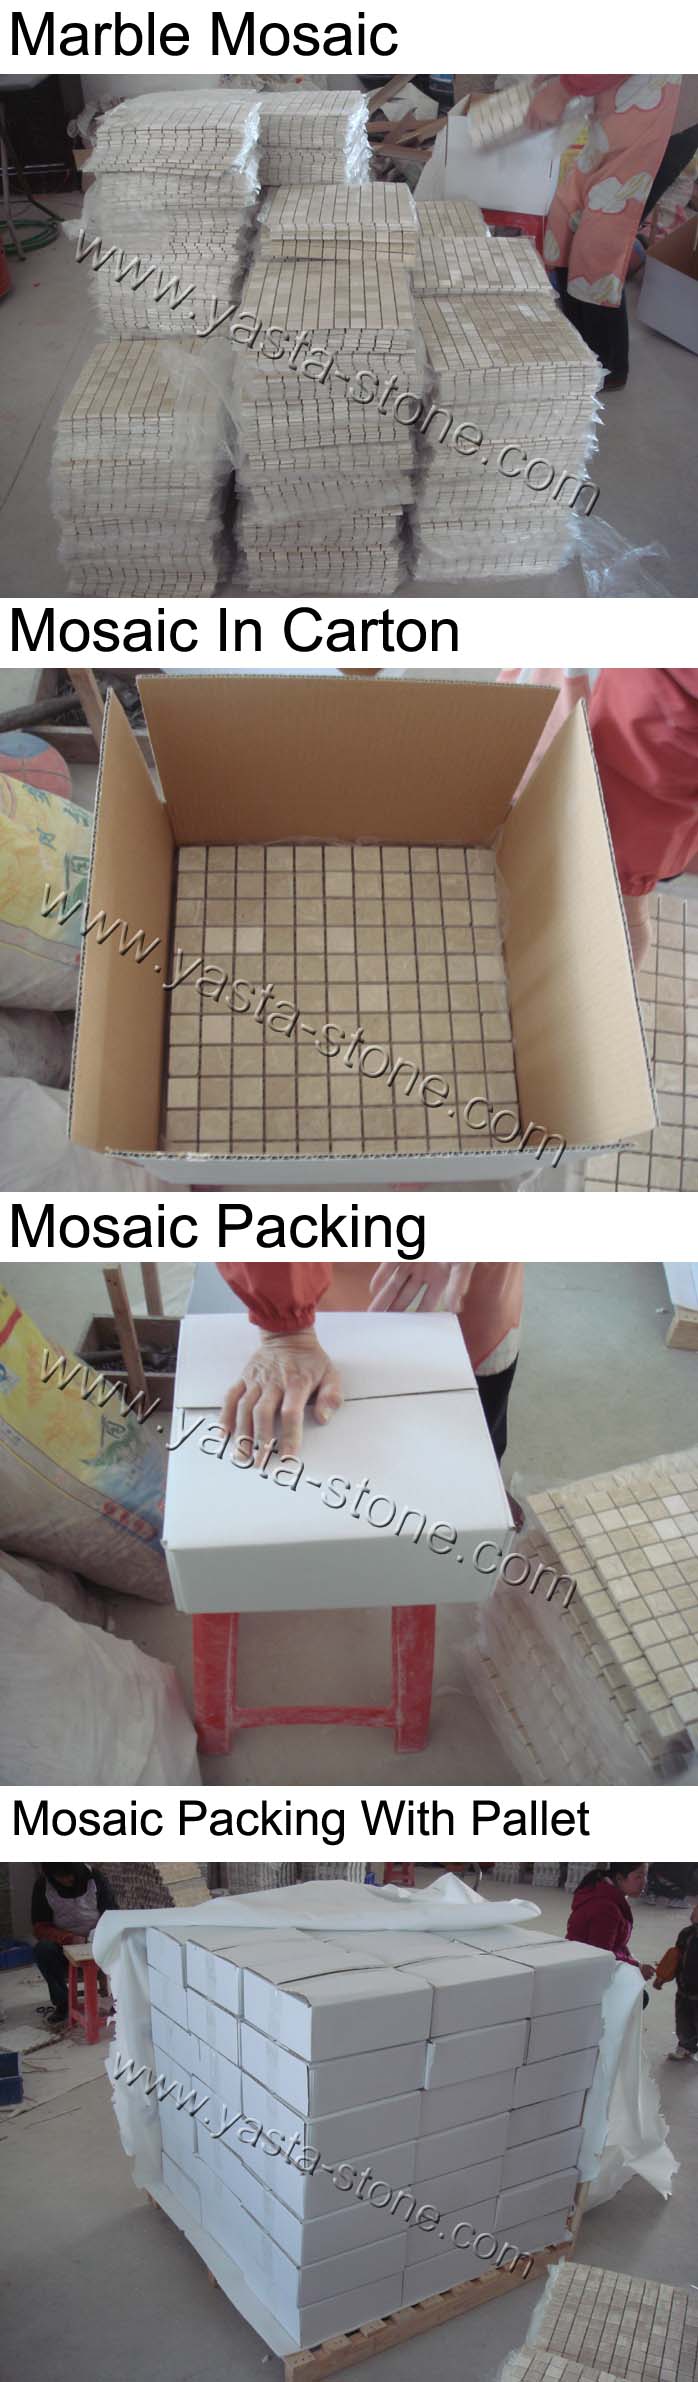 Mosaic Packing